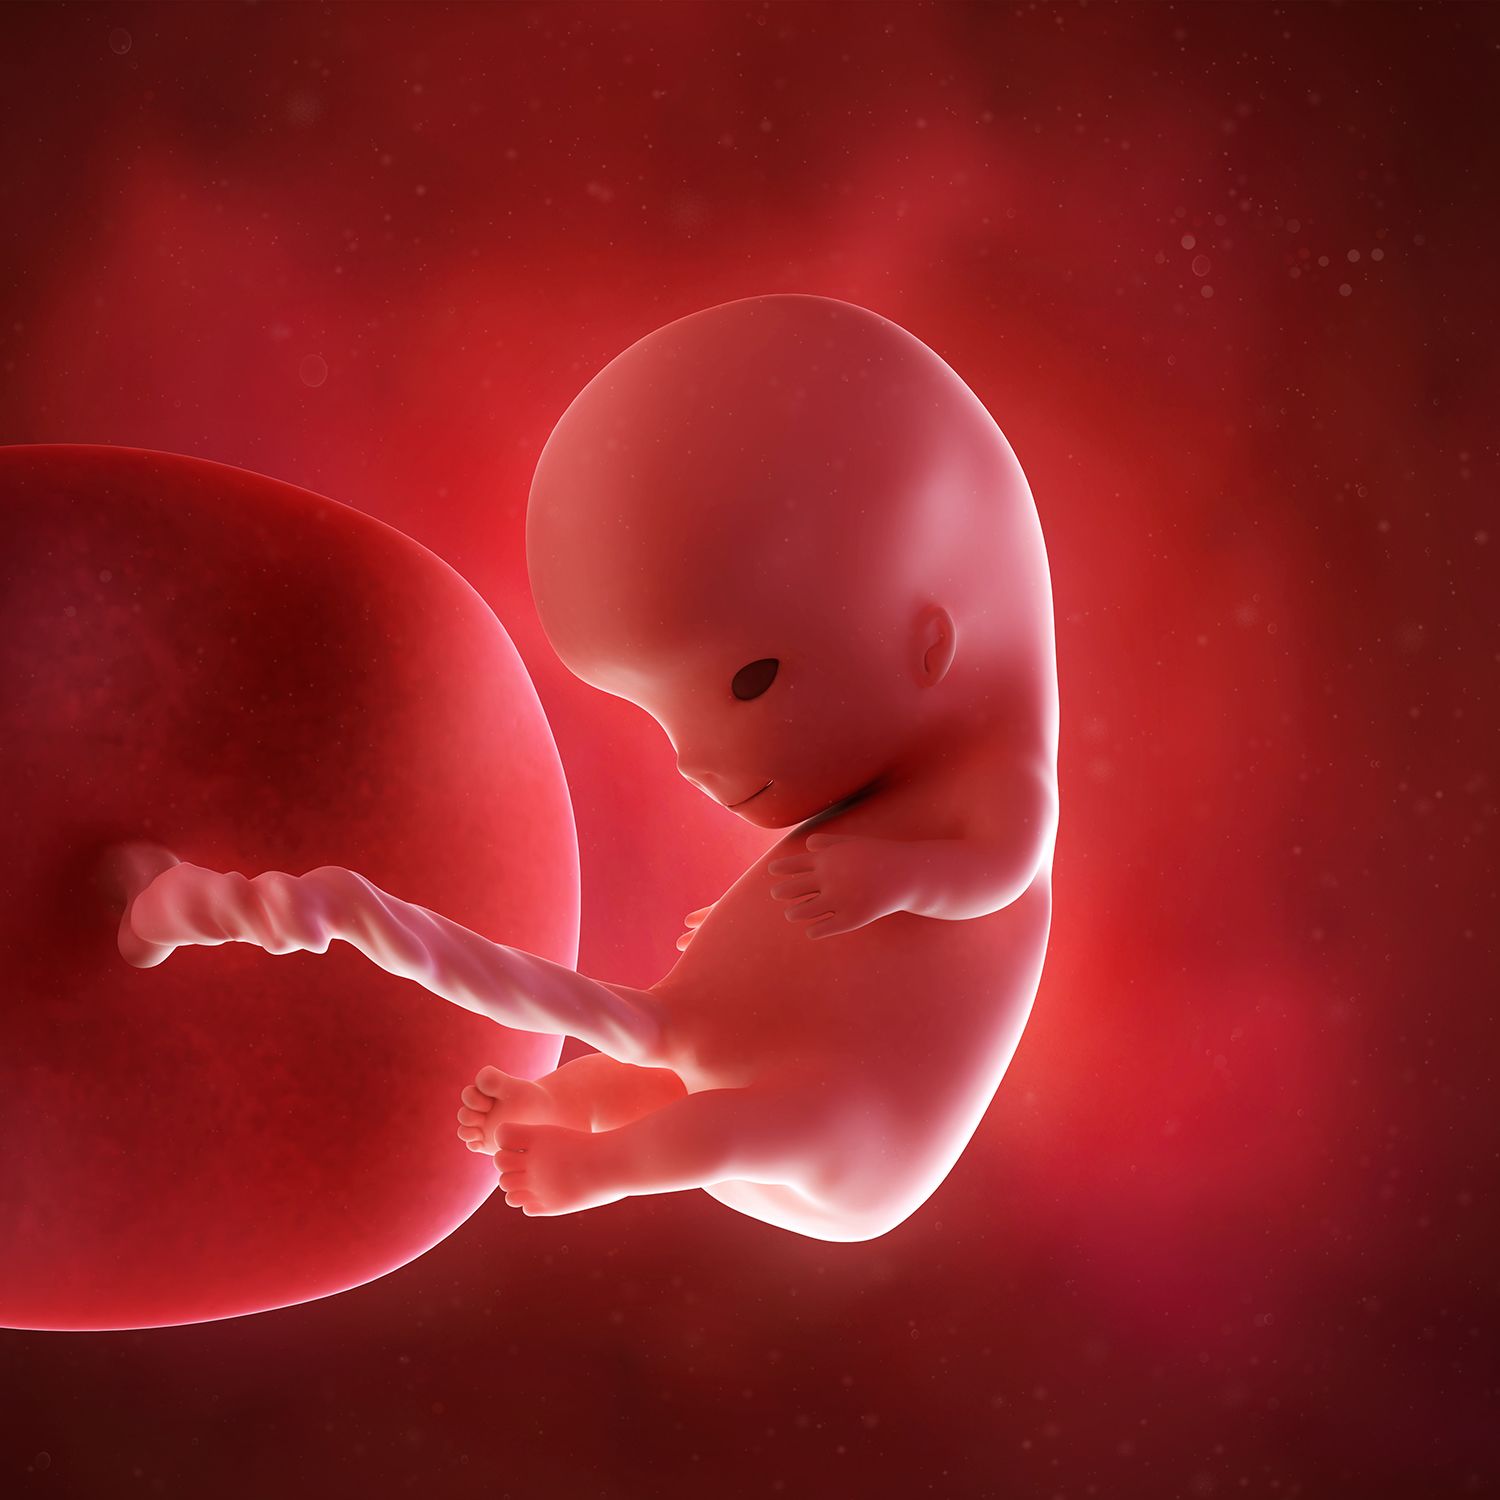 جنین در هفته دهم بارداری از خود صدا در می آورد+ تصاویر و علائم بارداری